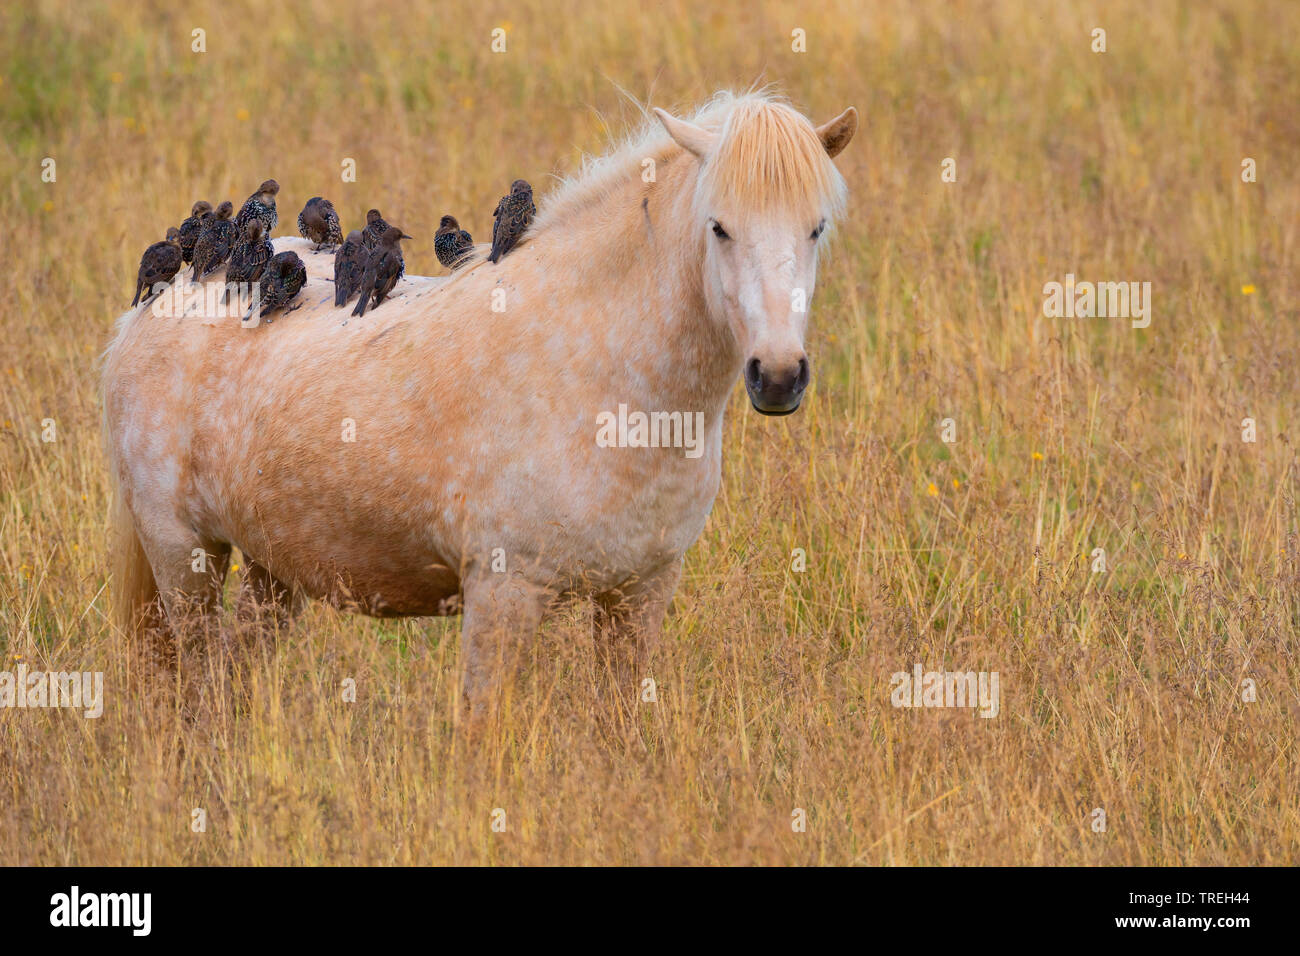 Starling comune (Sturnus vulgaris), la truppa si appollaia su un cavallo islandese, Islanda Foto Stock